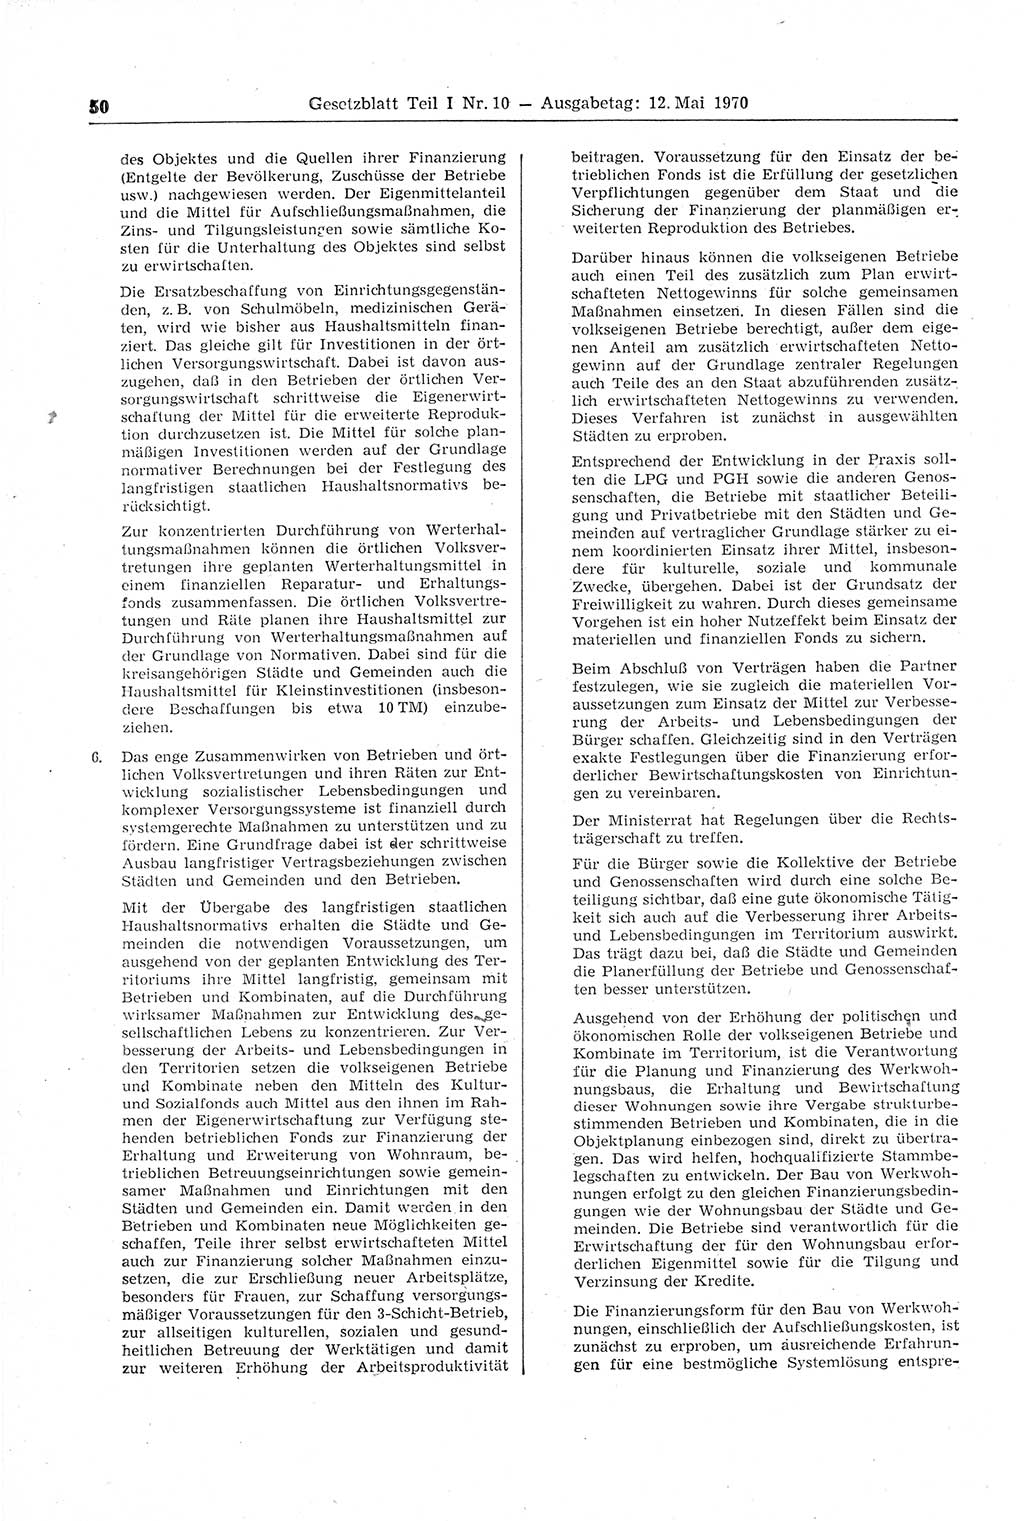 Gesetzblatt (GBl.) der Deutschen Demokratischen Republik (DDR) Teil Ⅰ 1970, Seite 50 (GBl. DDR Ⅰ 1970, S. 50)